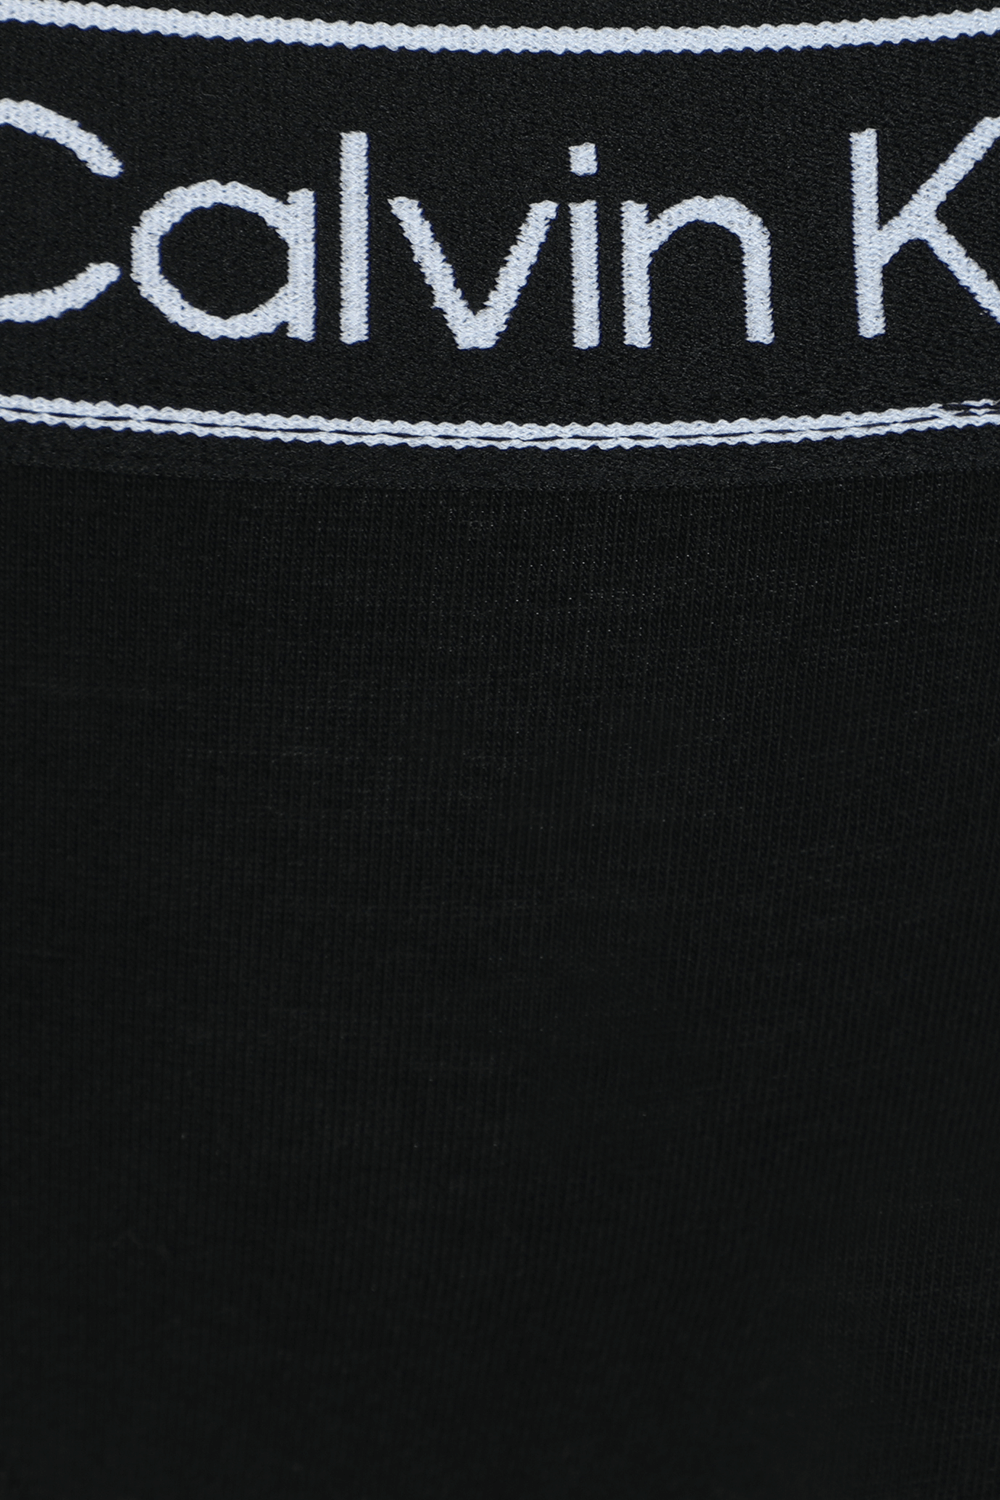 תחתונים חוטיני שחורים עם לוגו עדכני CALVIN KLEIN